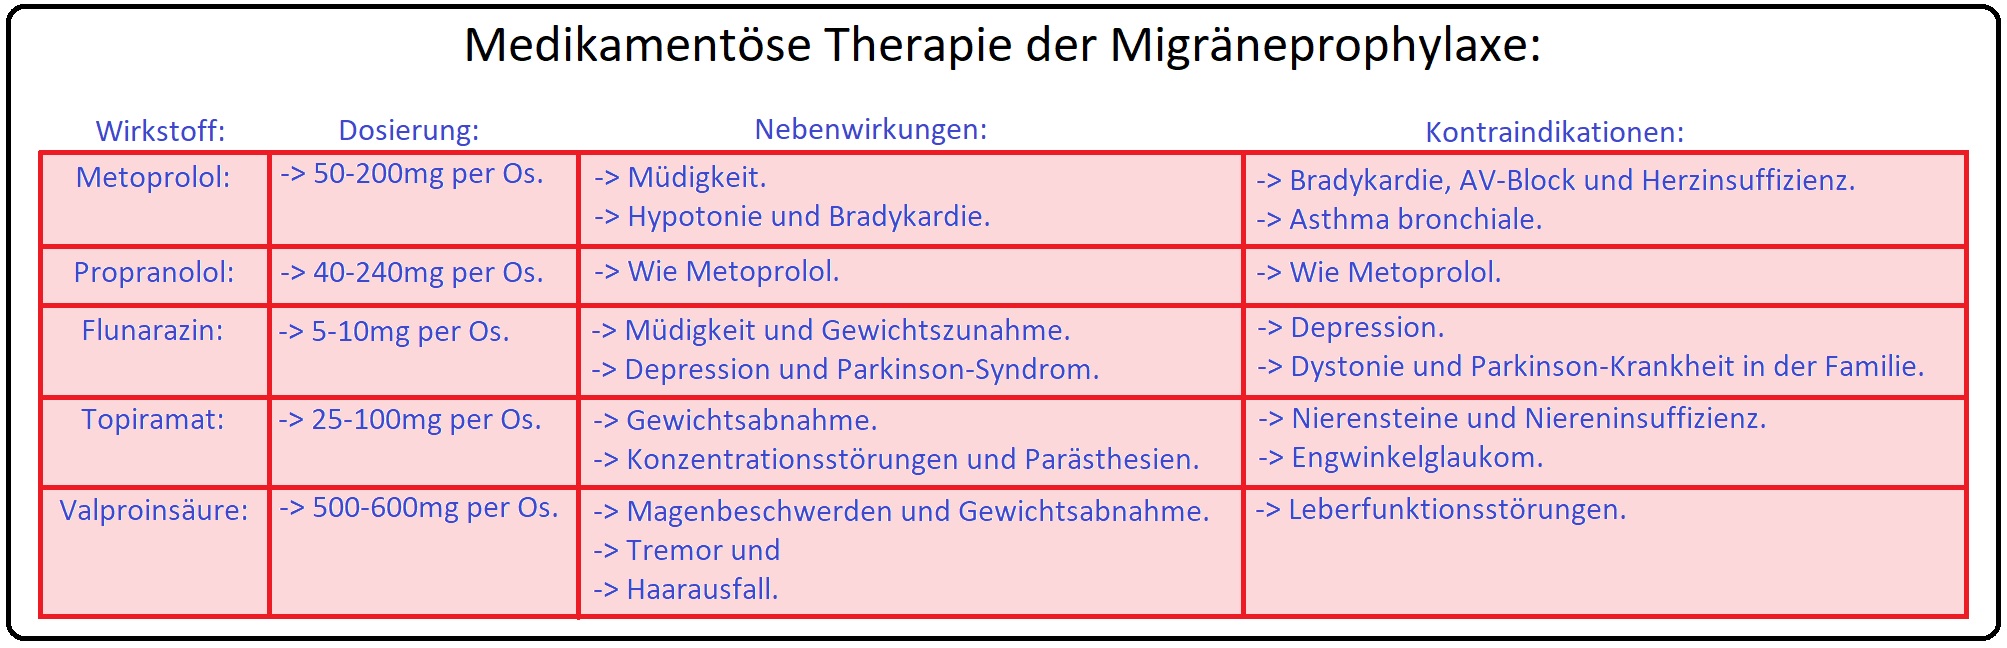 013 Medikamentöse Therapie der Migräneprophylaxe